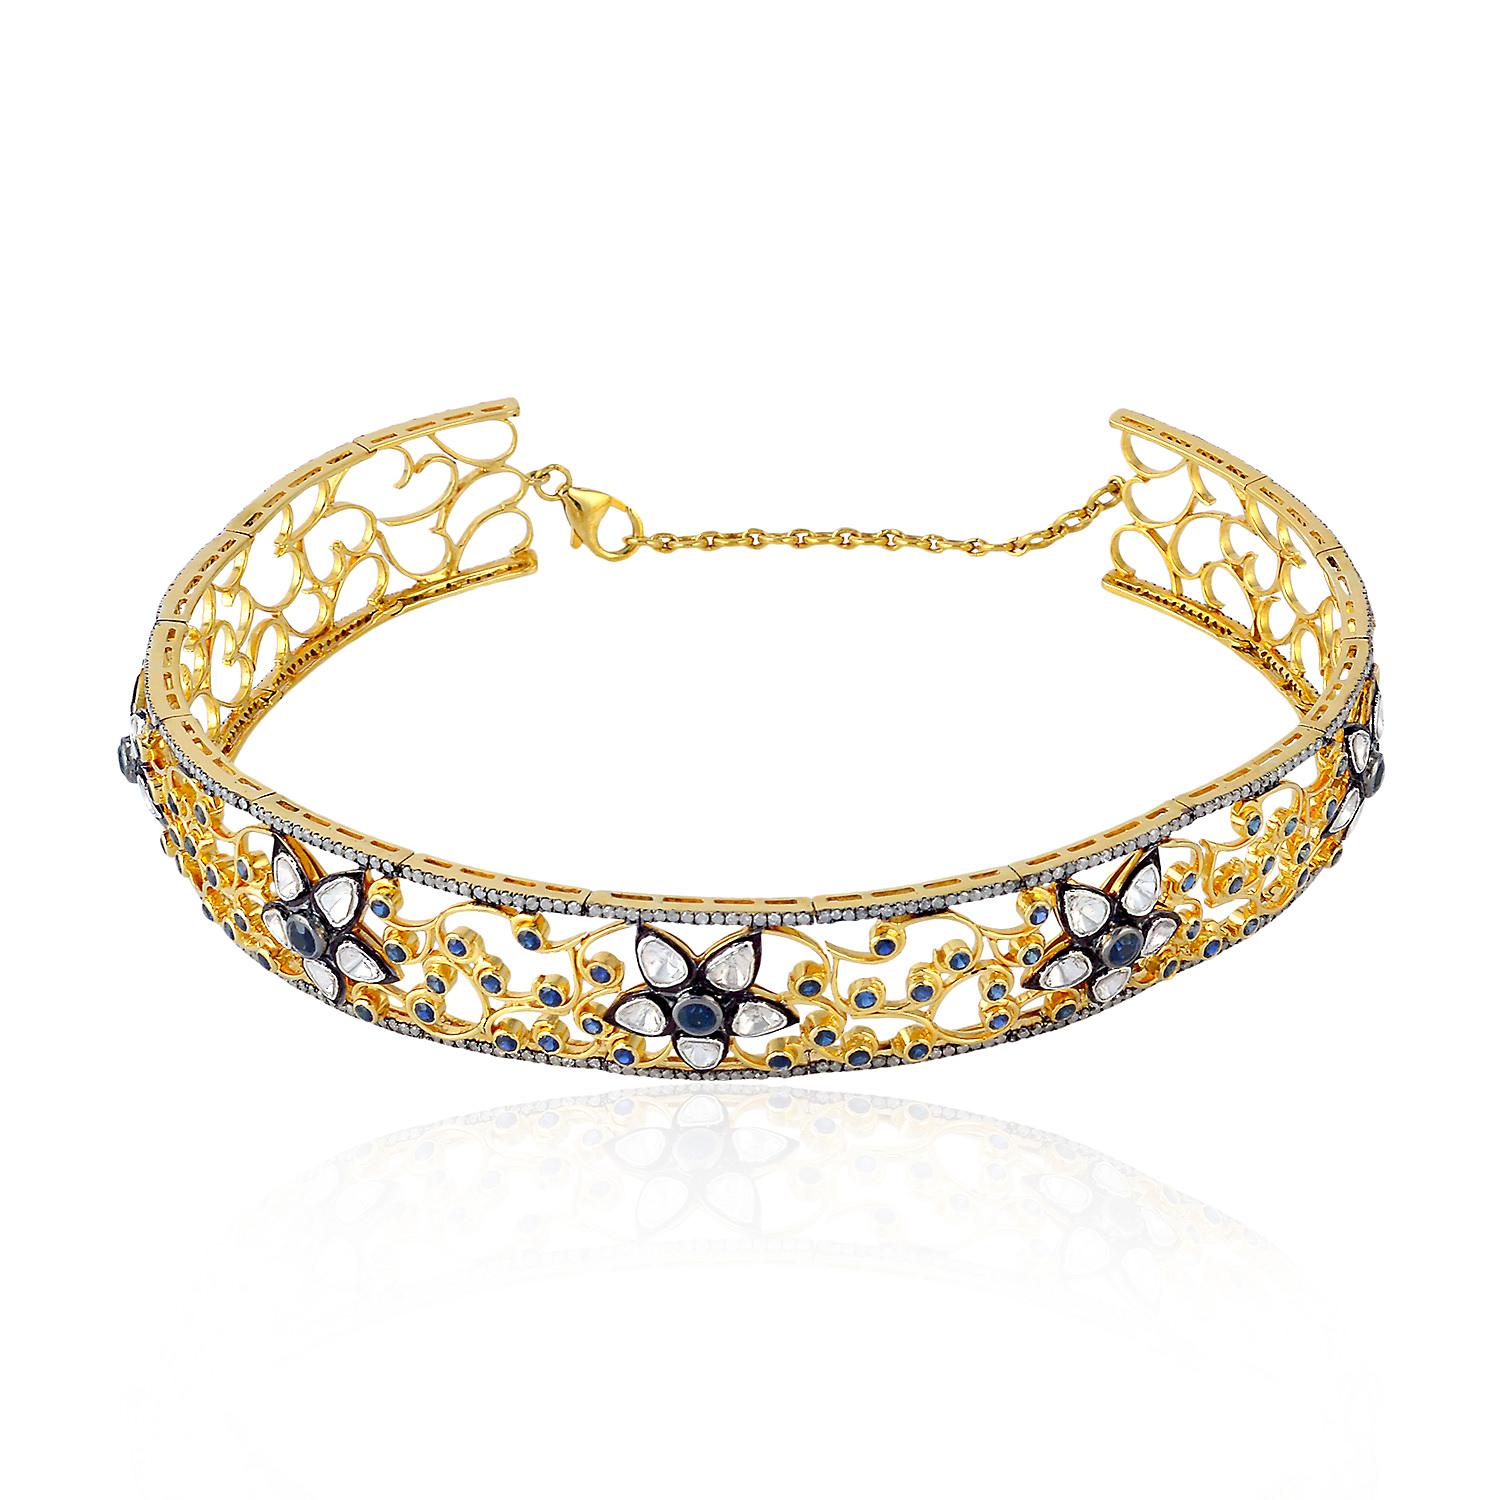 Diese exquisite Halskette besticht durch ihr filigranes Design aus 18-karätigem Gold und Silber, das mit schillernden Diamanten und Saphiren verziert ist. Mit ihrer aufwändigen und detaillierten Verarbeitung ist sie die perfekte Wahl für eine